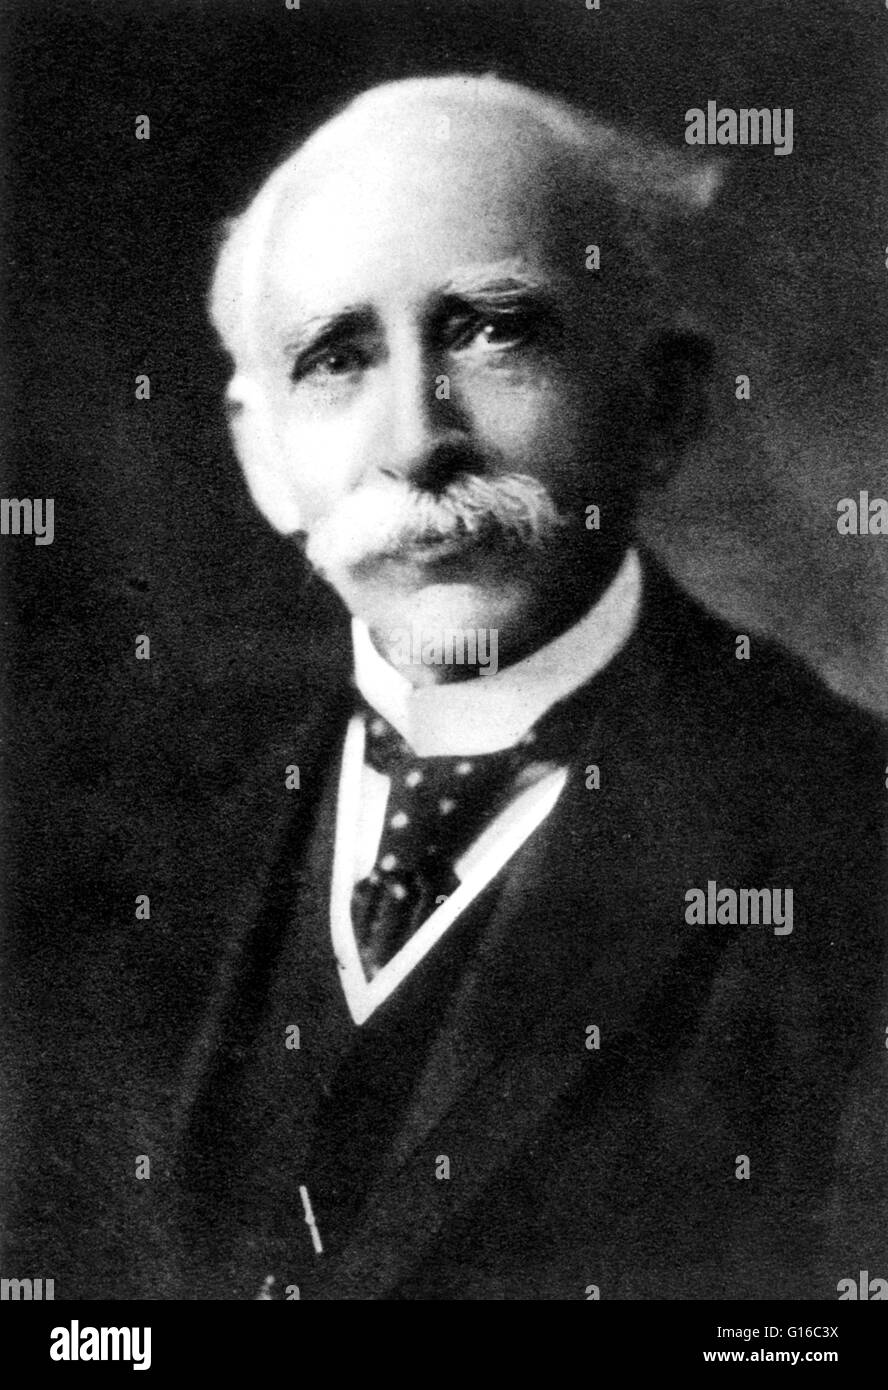 John Ambrose Fleming (29. November 1849 - 18. April 1945) war ein englischer Elektrotechniker und Physiker. 1904 erfand er zwei-Elektroden Vakuum-Röhre Gleichrichter, die er die Oszillation-Ventil nannte. Es hieß auch ein thermoionische Ventil, Vakuum Stockfoto